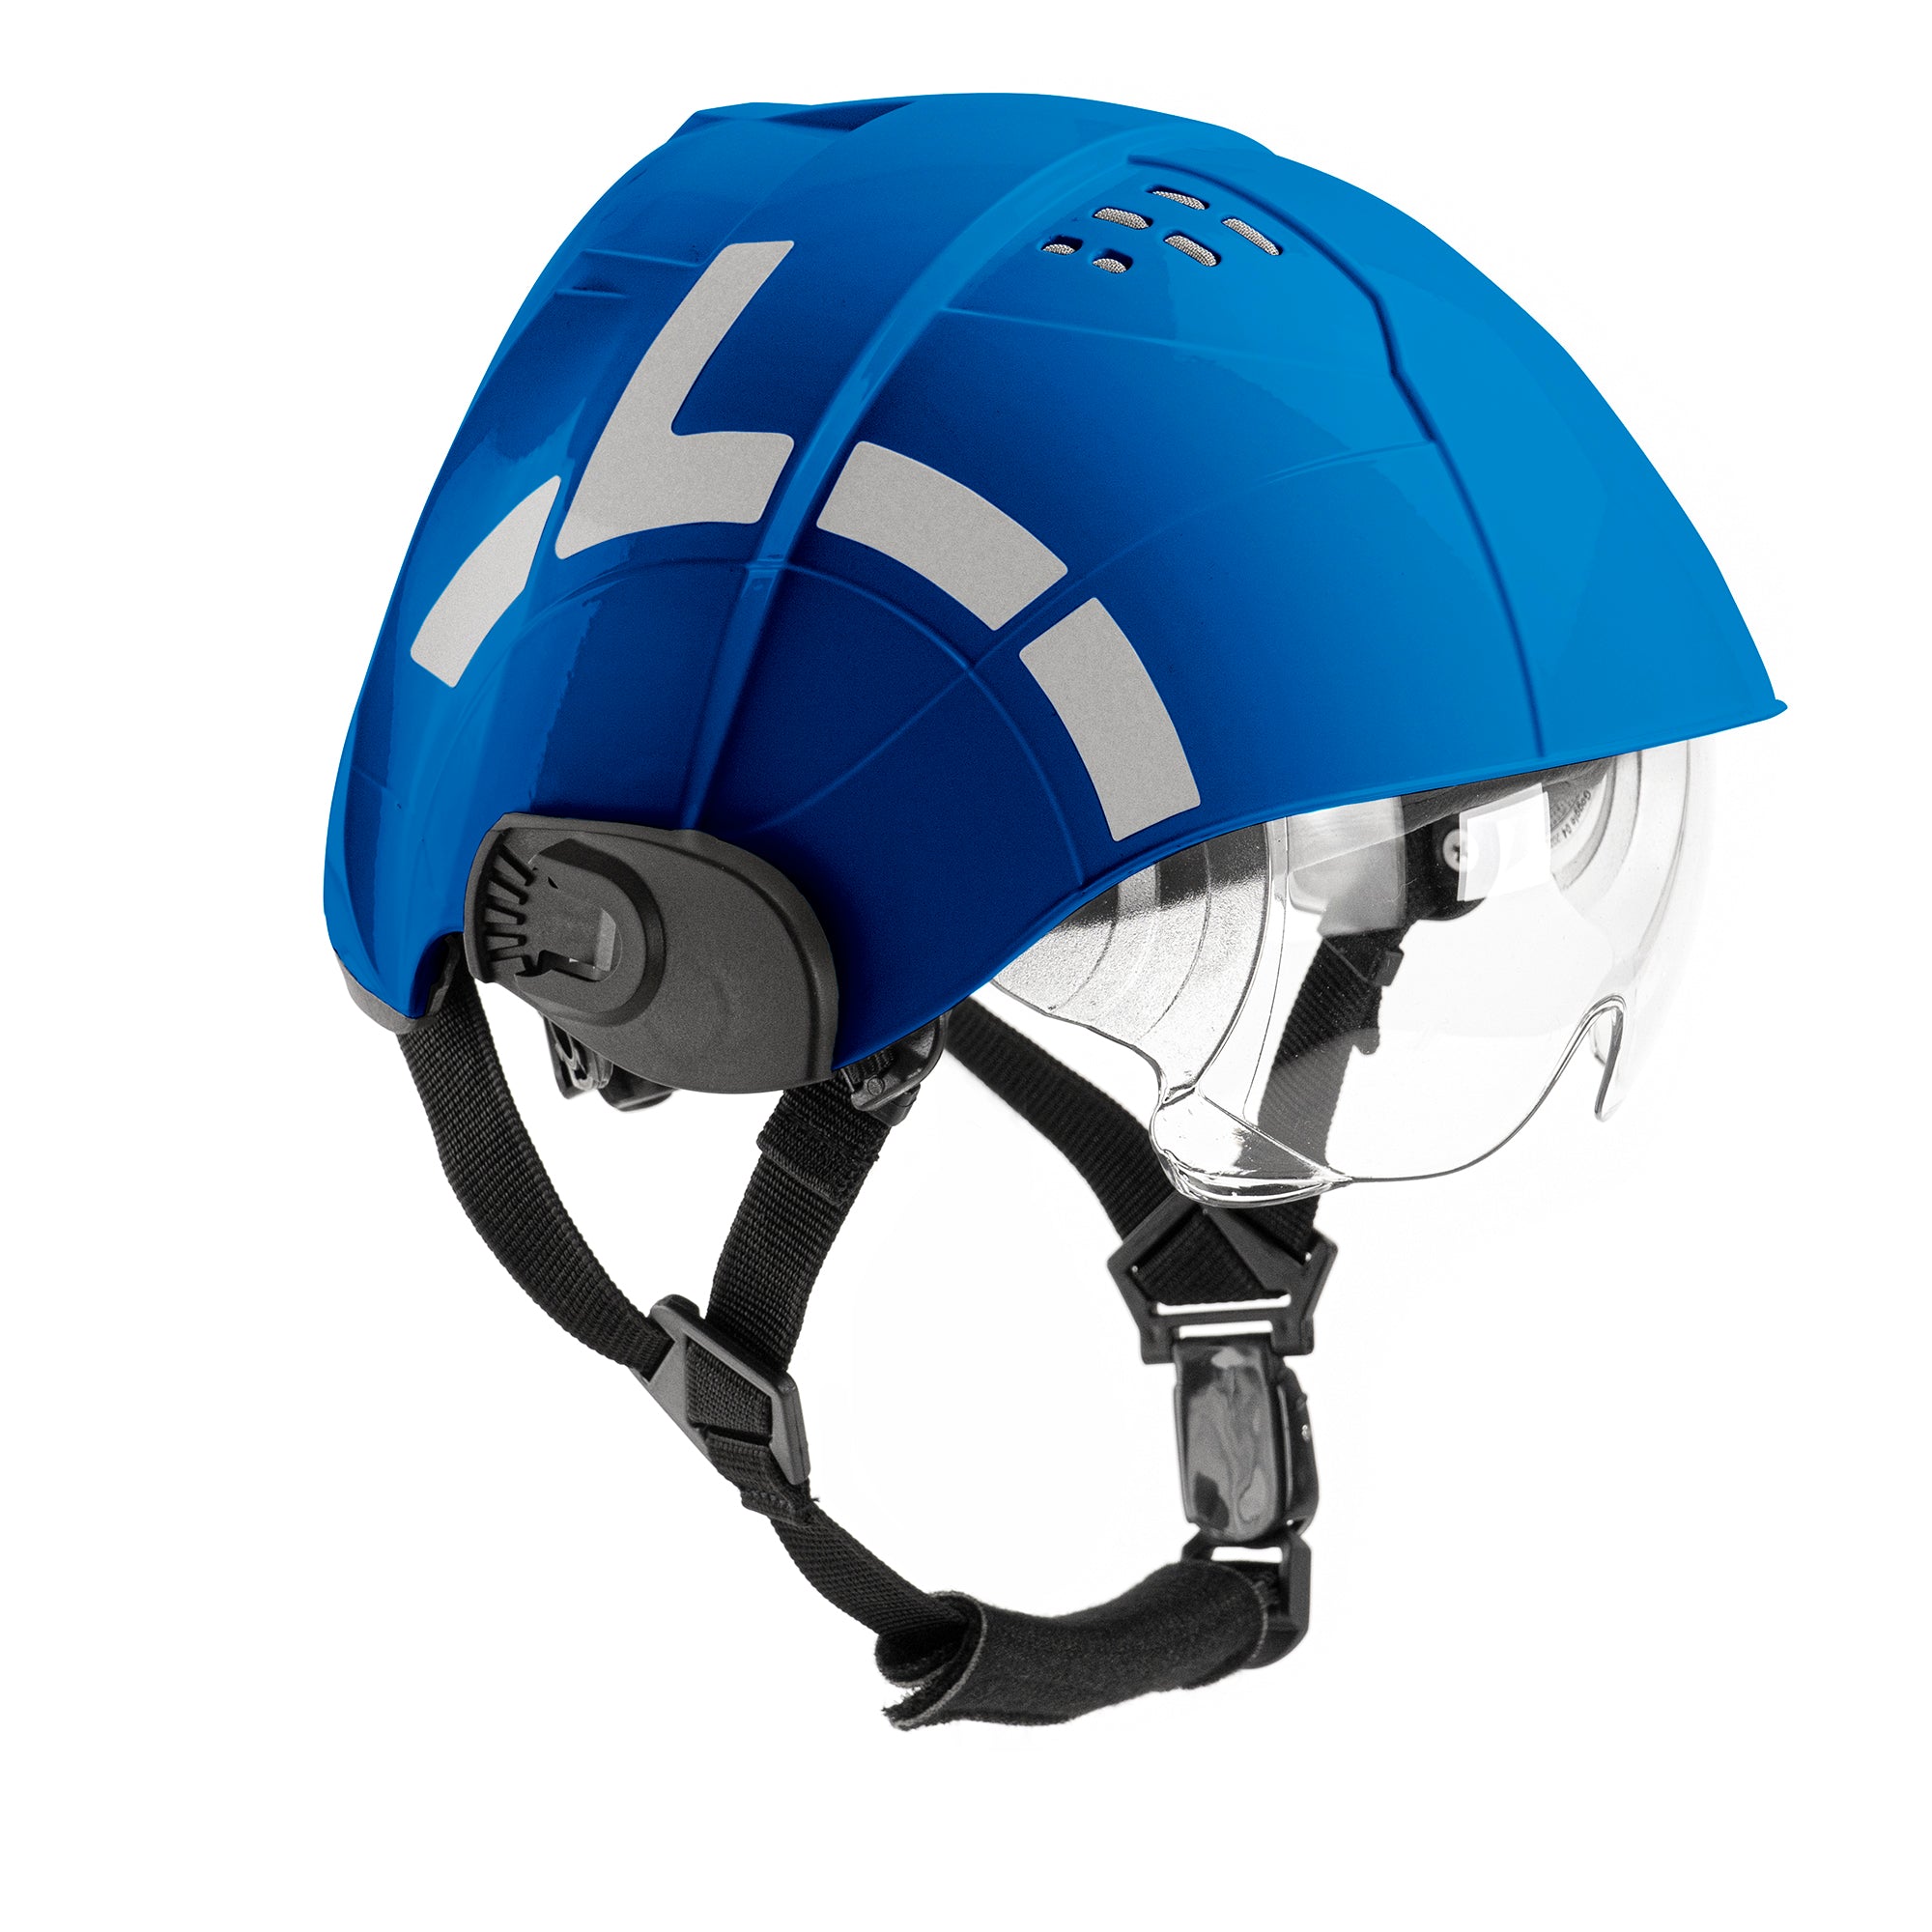 helmet - WRS Technical International – WRS rescue